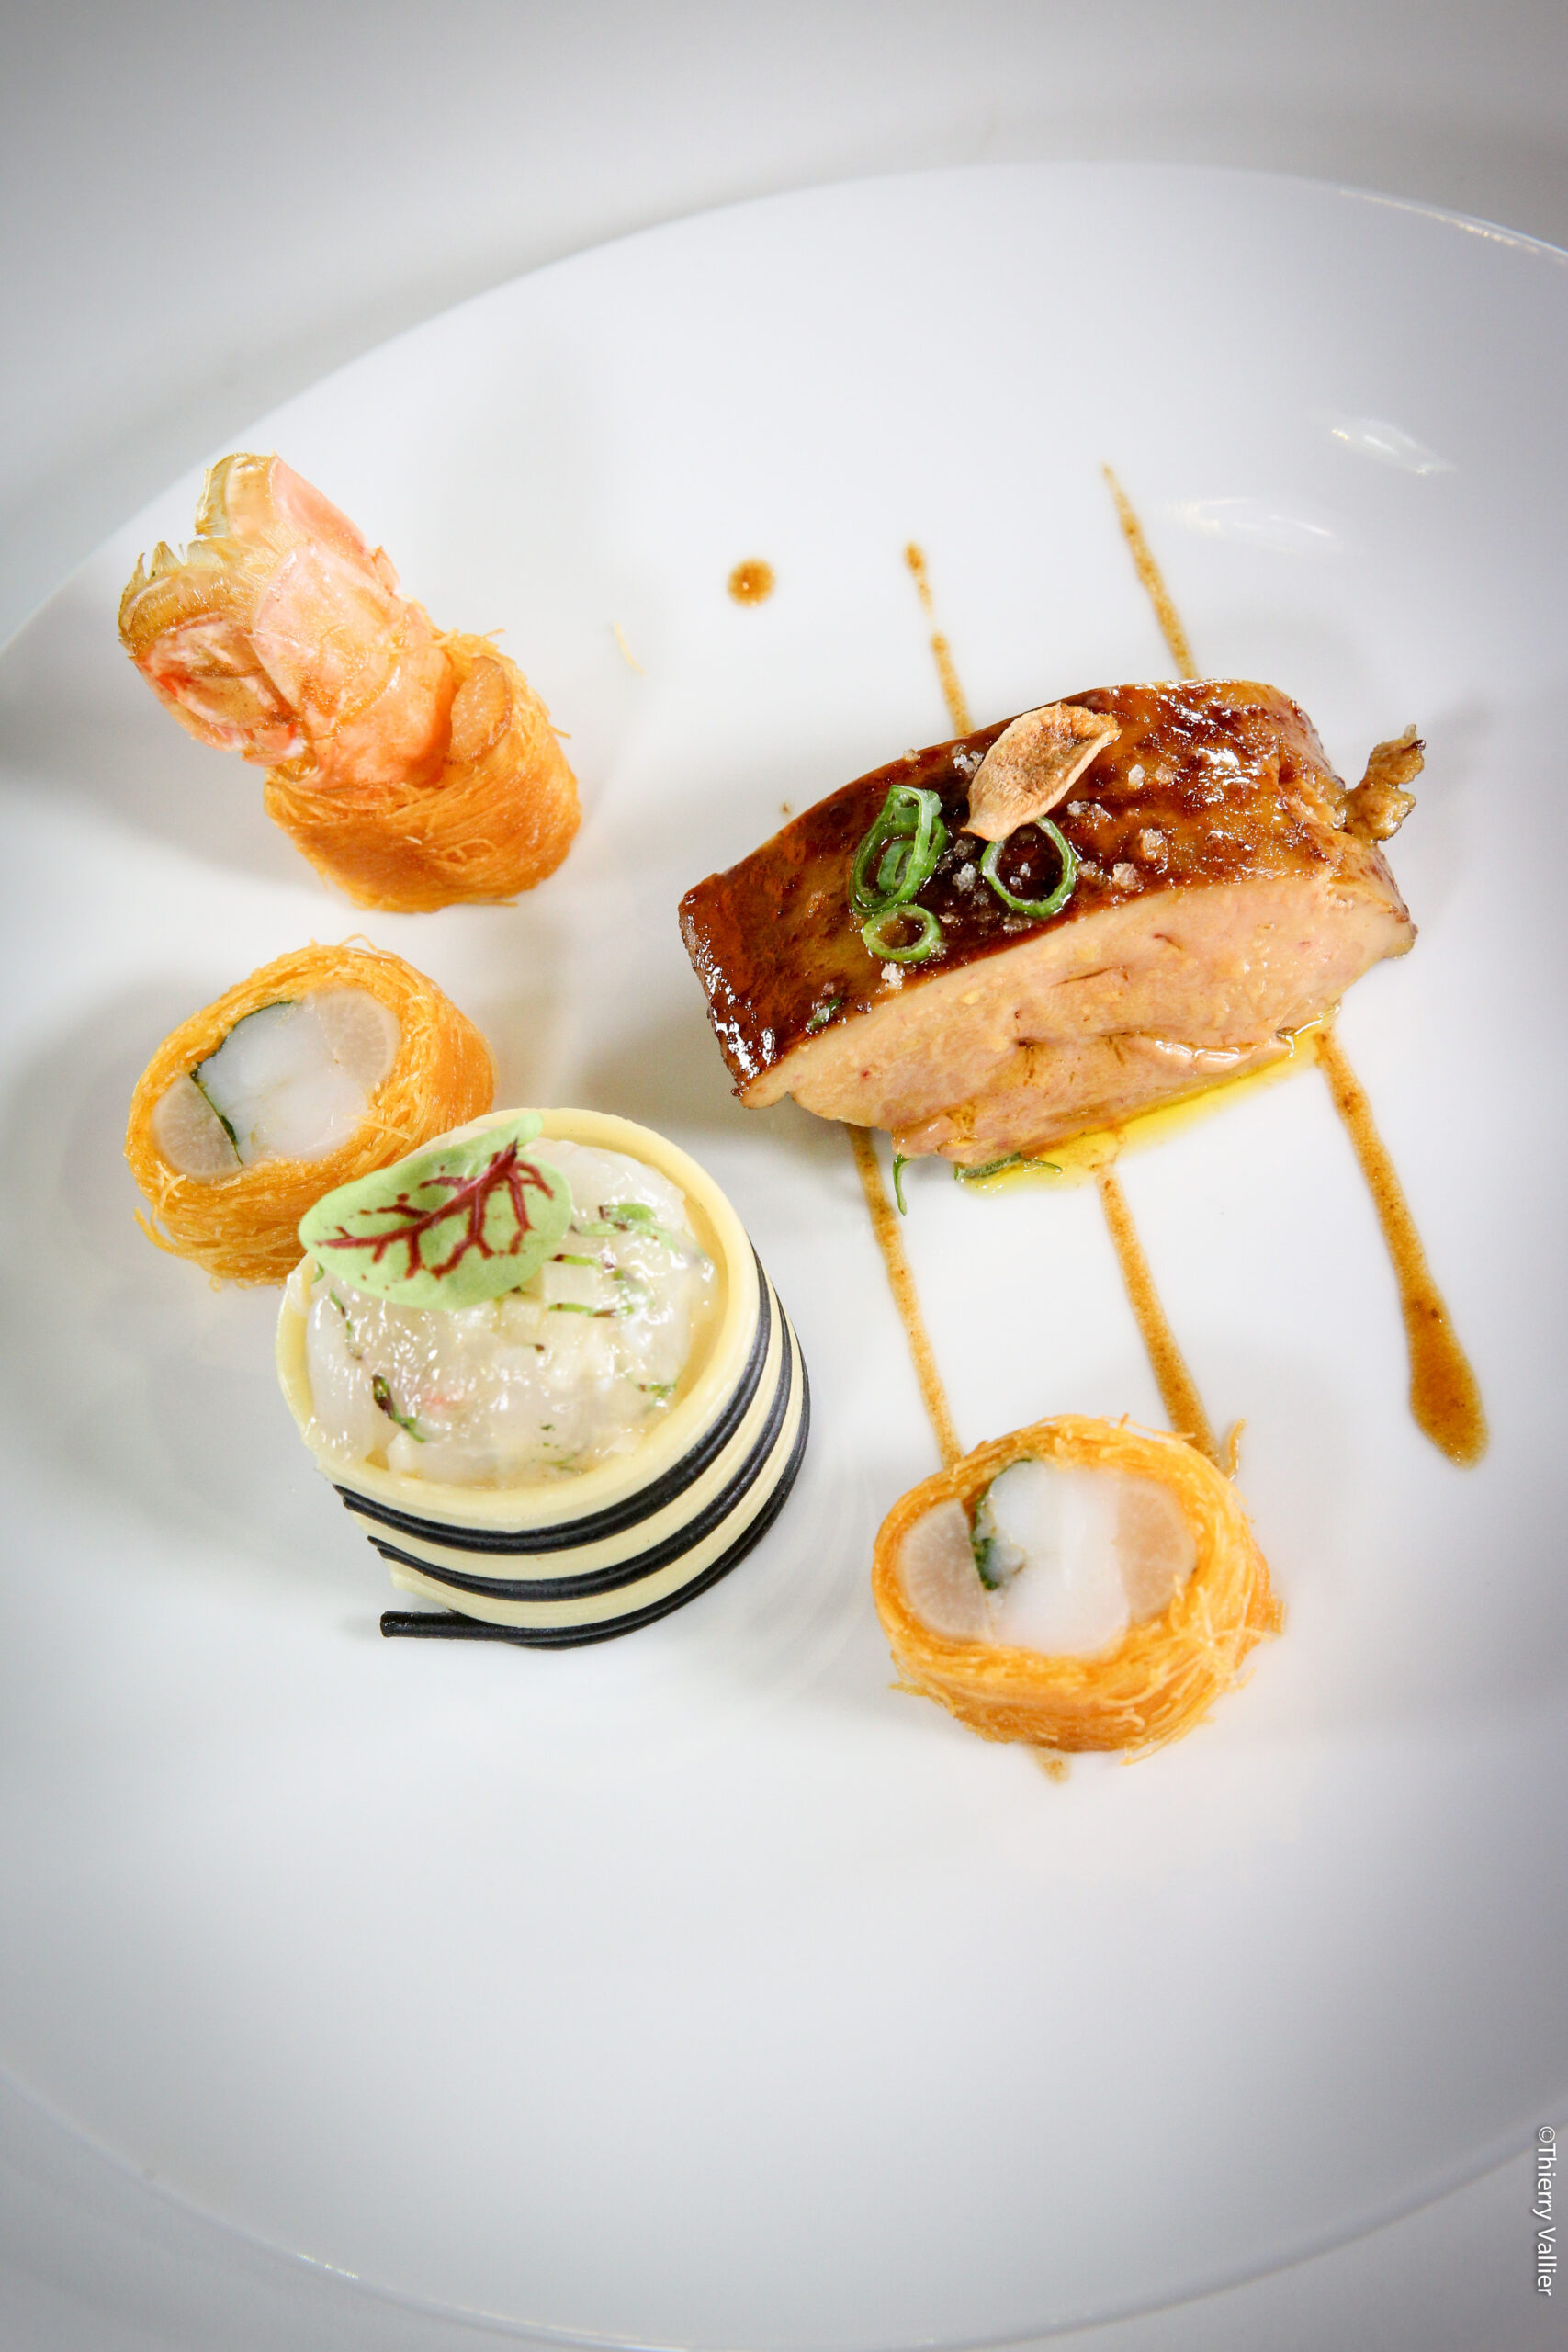 Lobe de foie gras de canard poché dans un jus de langoustine,  timbale de spaghetti au moelleux de langoustine,  queue rôtie en Kadaïf et scorsonères